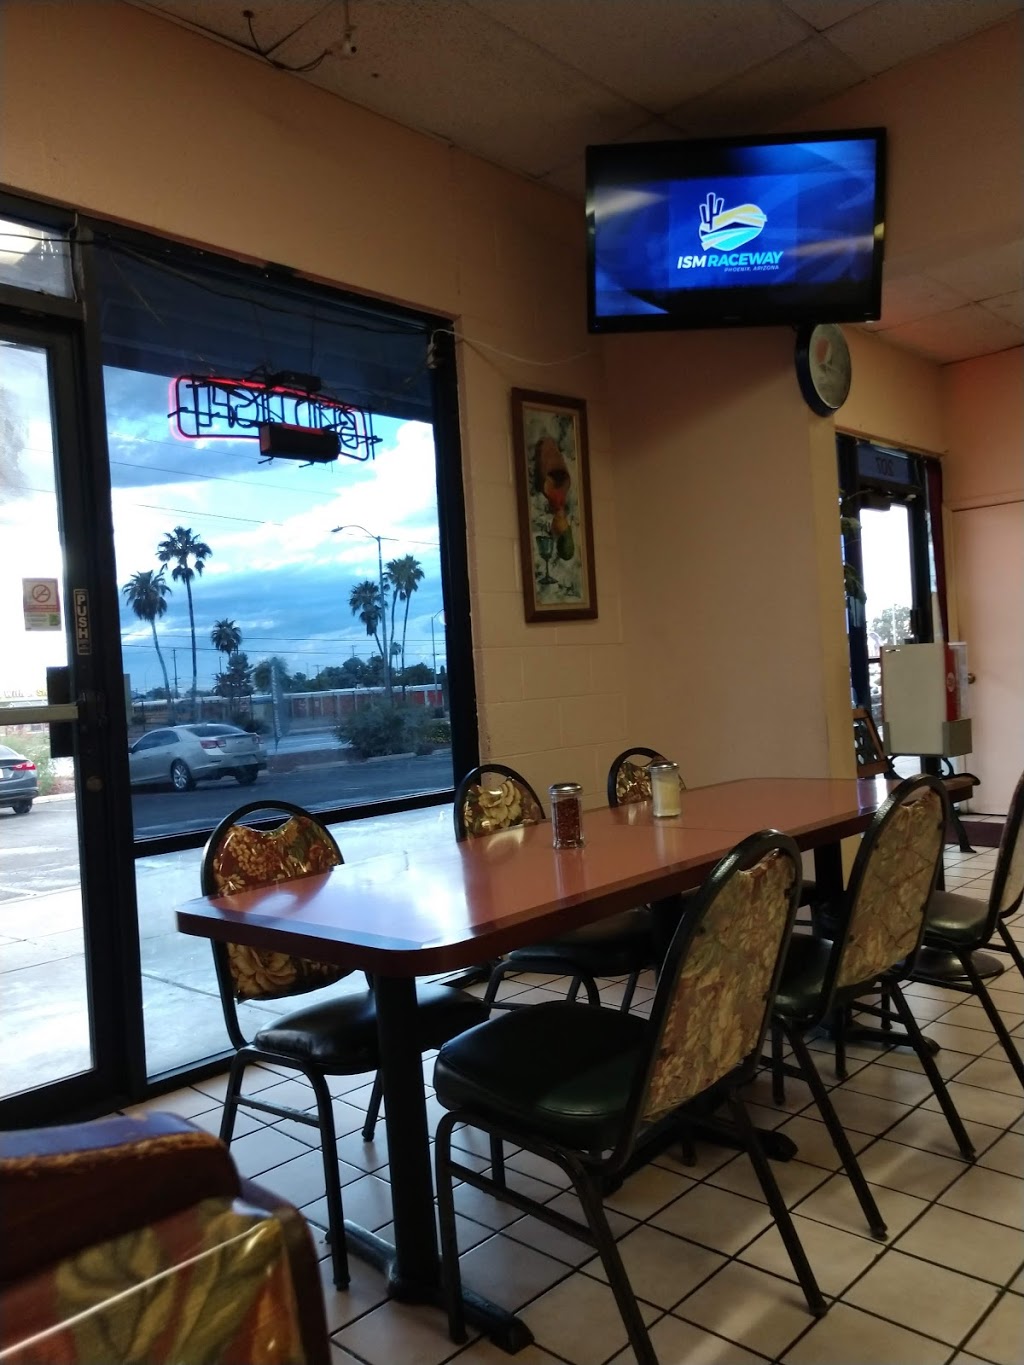 Chariot Pizza | 1835 S Alvernon Way #207, Tucson, AZ 85711, USA | Phone: (520) 750-8350